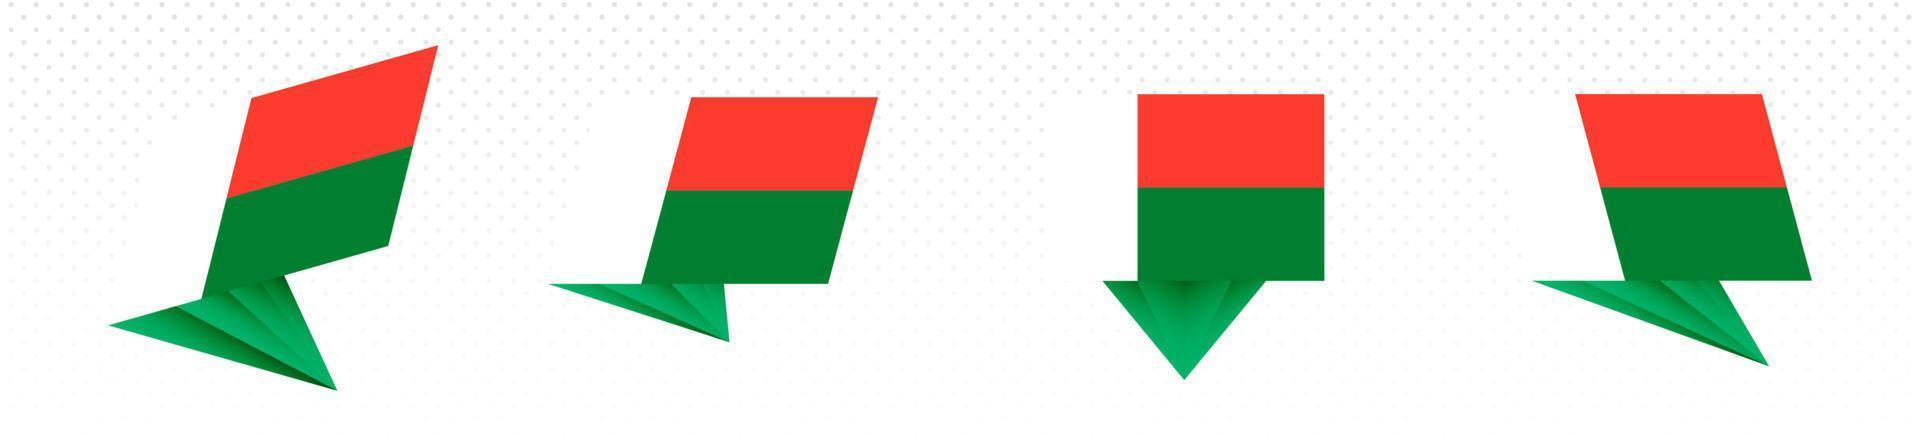 Flagge Madagaskars im modernen abstrakten Design, Flaggensatz. vektor